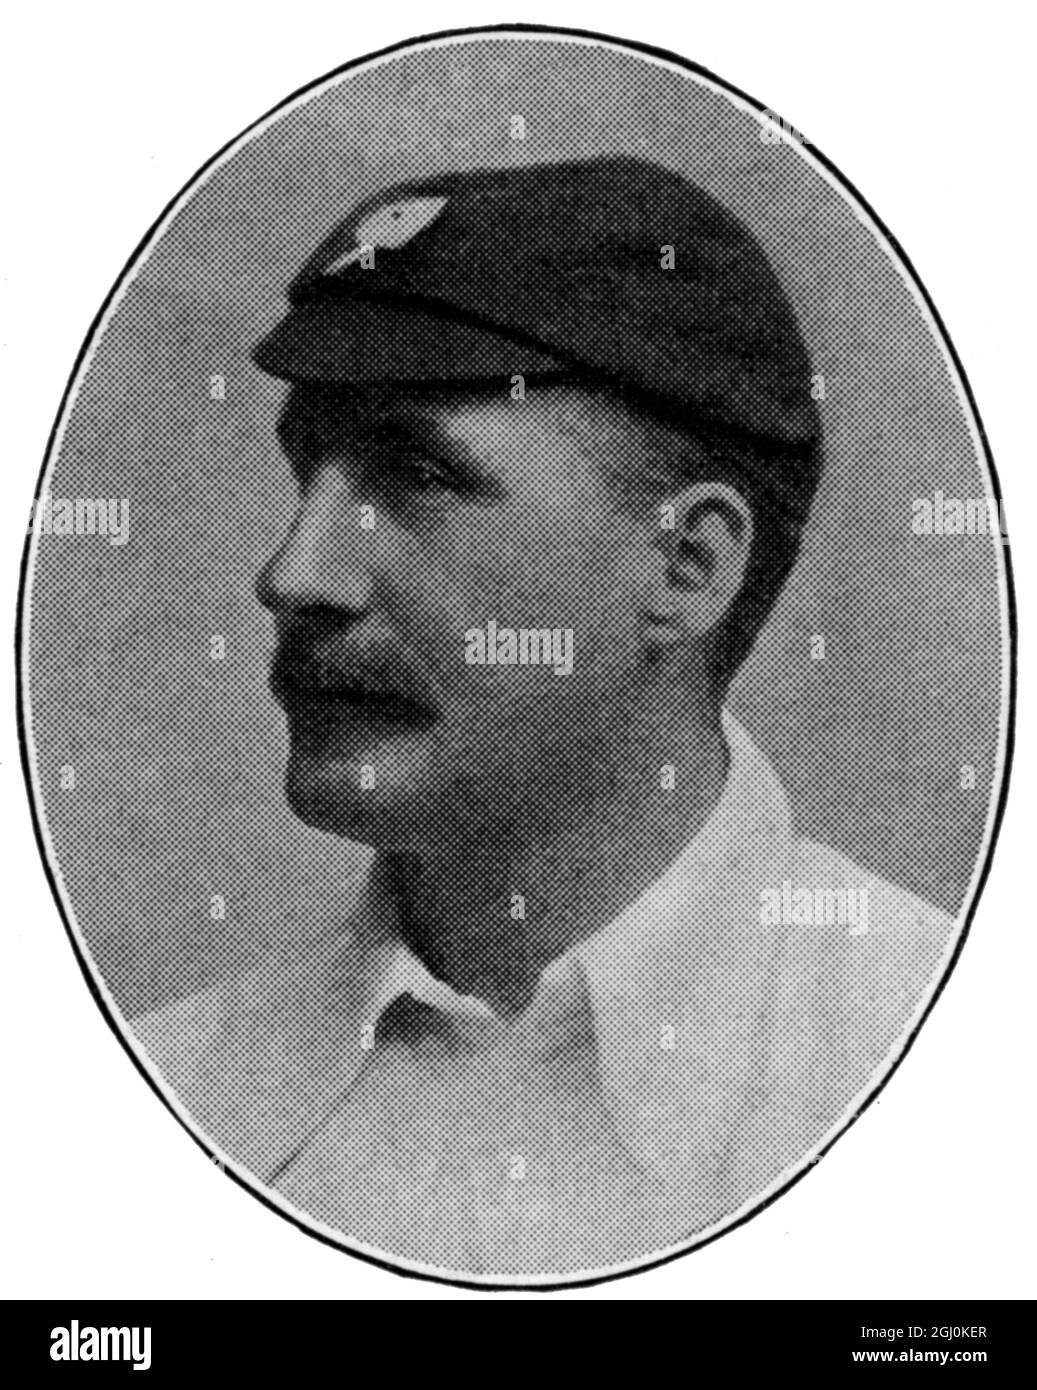 Lord Hawke : County Cricket Player Yorkshire Martin Bladen Hawke, 7. Baron Hawke (Gainsborough 16. August 1860 - 10. Oktober 1938 in Edinburgh) war ein englischer Cricketspieler und Administrator. Er war 28 Spielzeiten lang Kapitän des Yorkshire County Cricket Club und spielte in fünf Testspielen, von denen er vier mitführte (und alle vier gewonnen wurden). Stockfoto